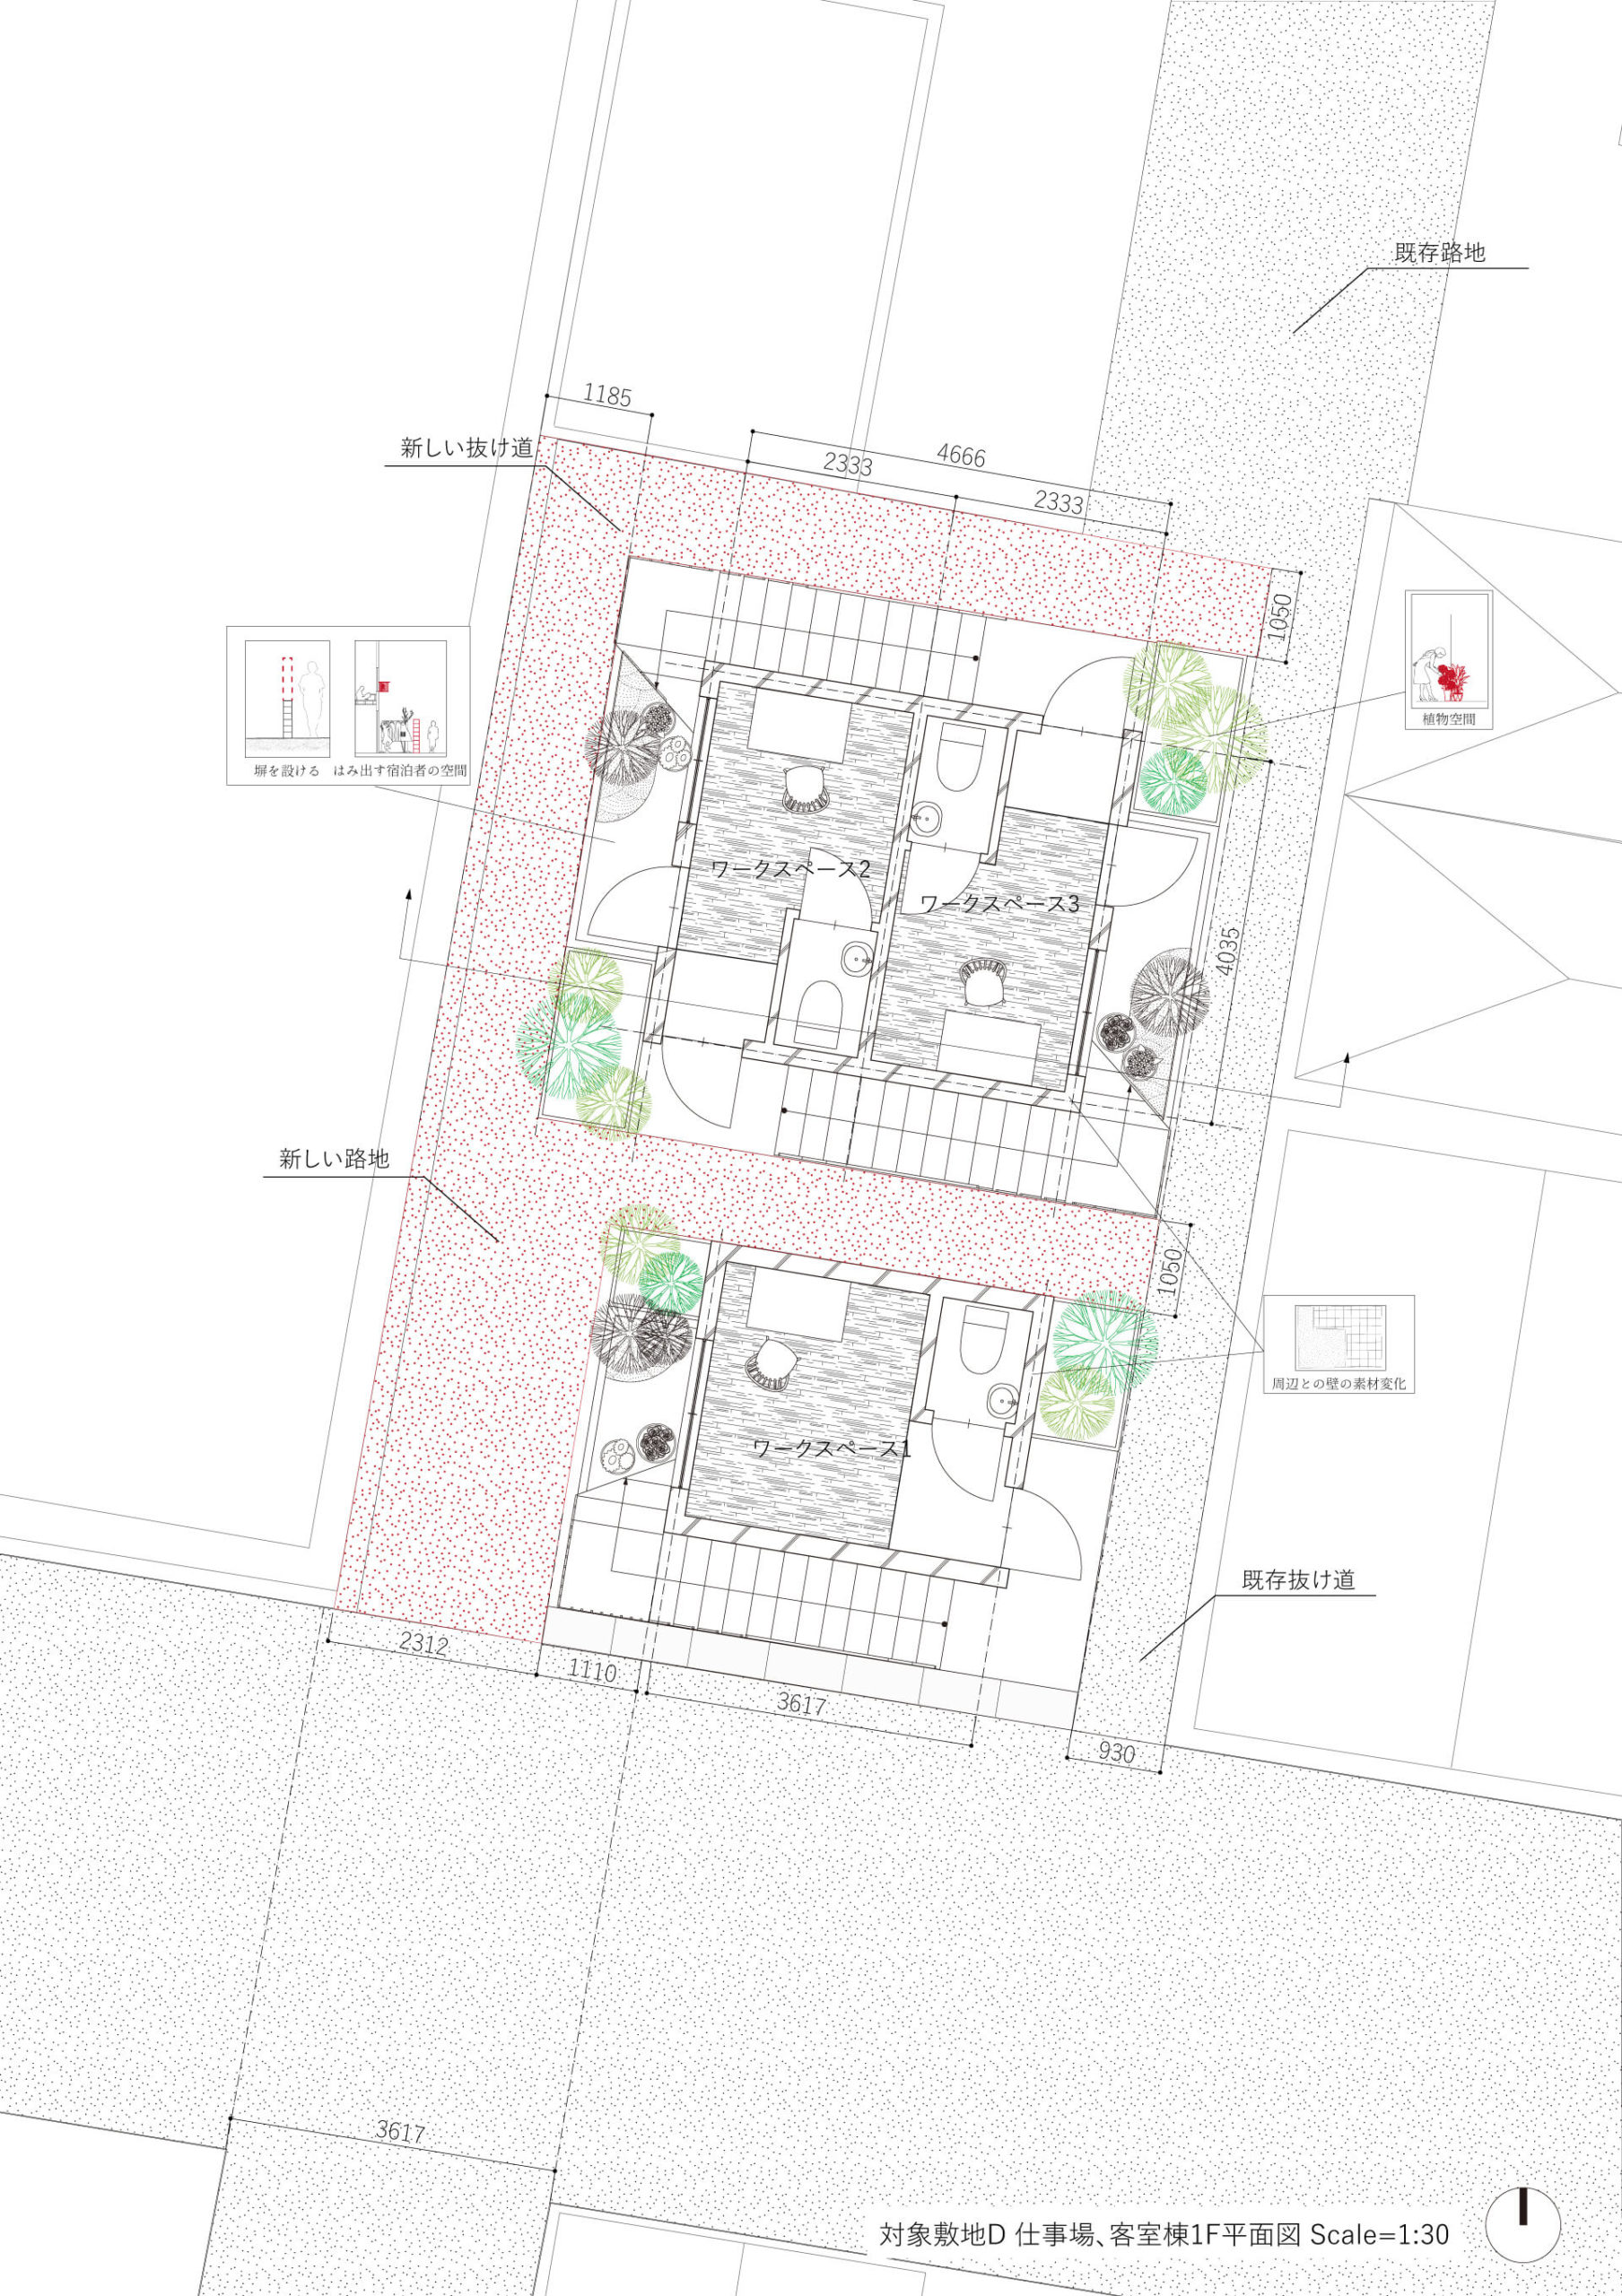 分散型宿泊施設による街のデザイン手法の提案-16